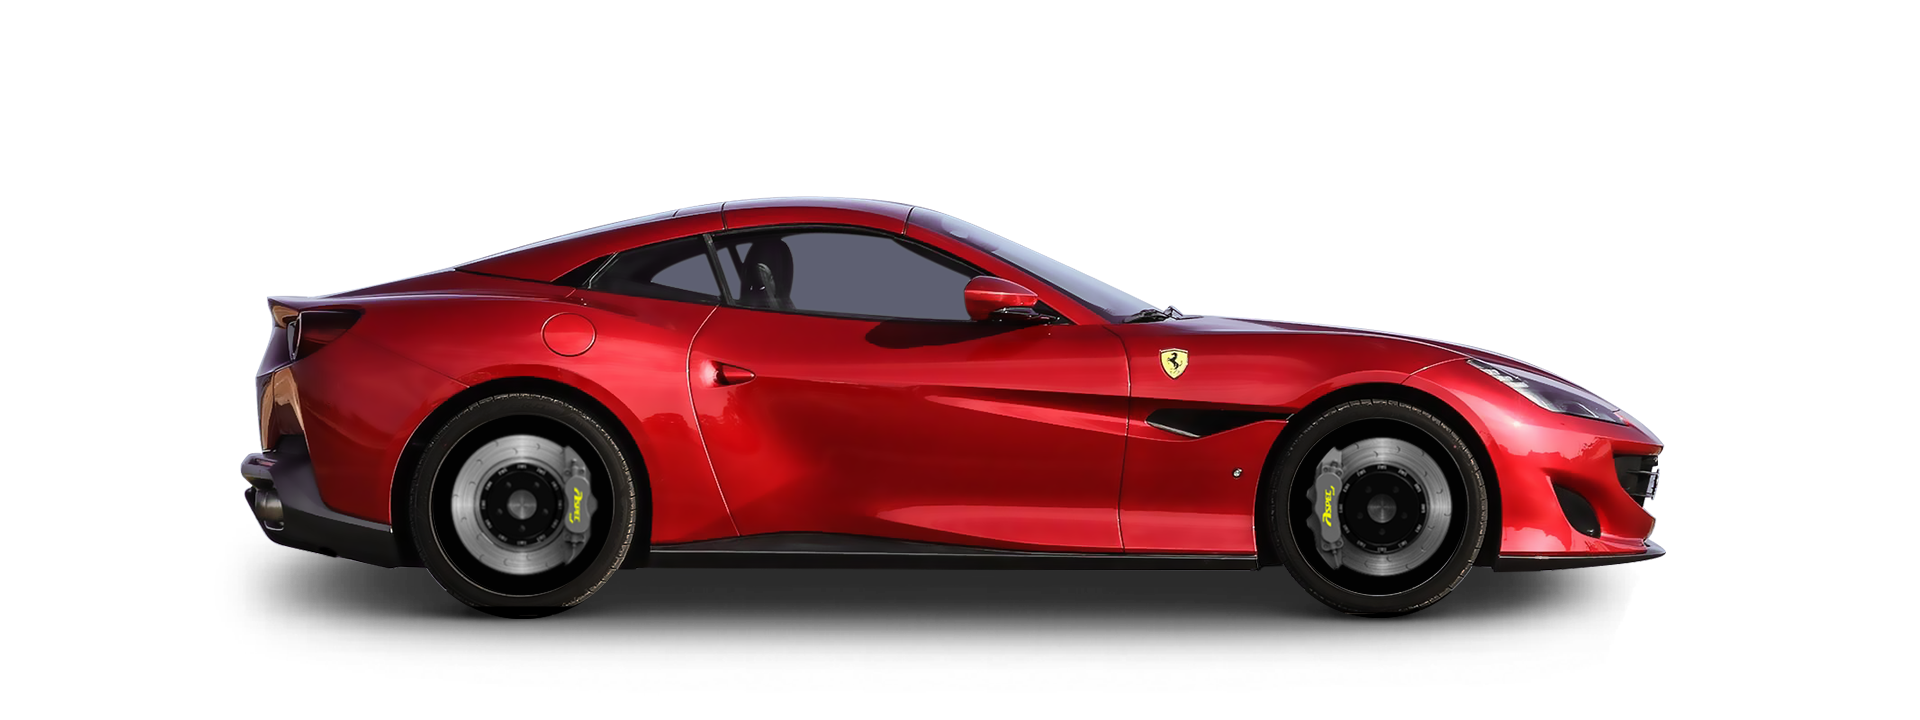 法拉利Ferrari Portofino MF59